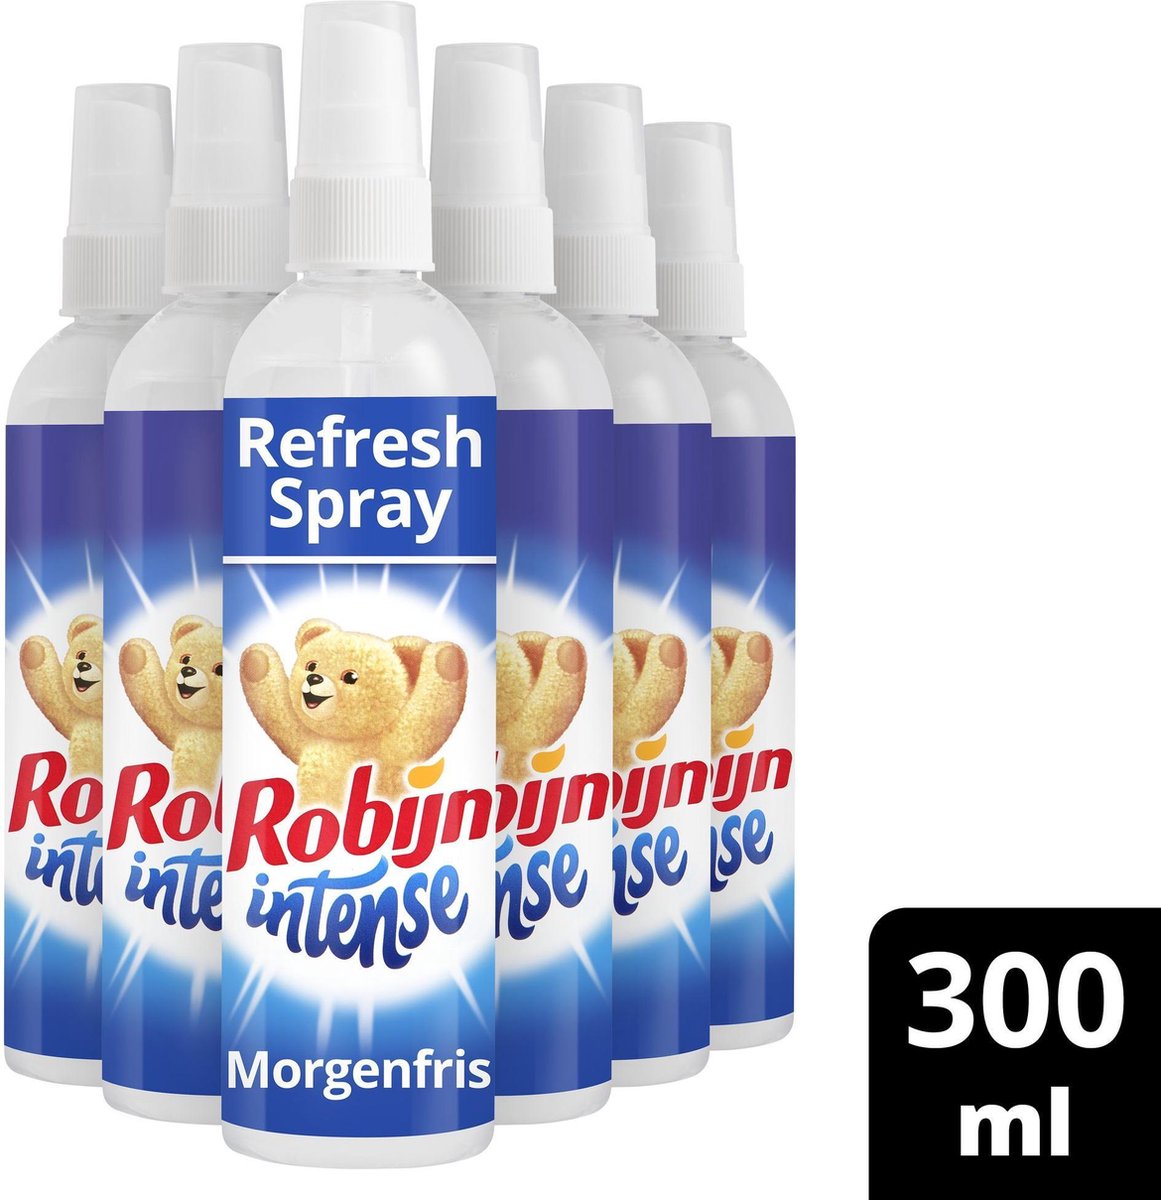 Robijn Morgenfris Refresh Spray Textielverfrisser - 6 x 300 ml -  Voordeelverpakking | bol.com